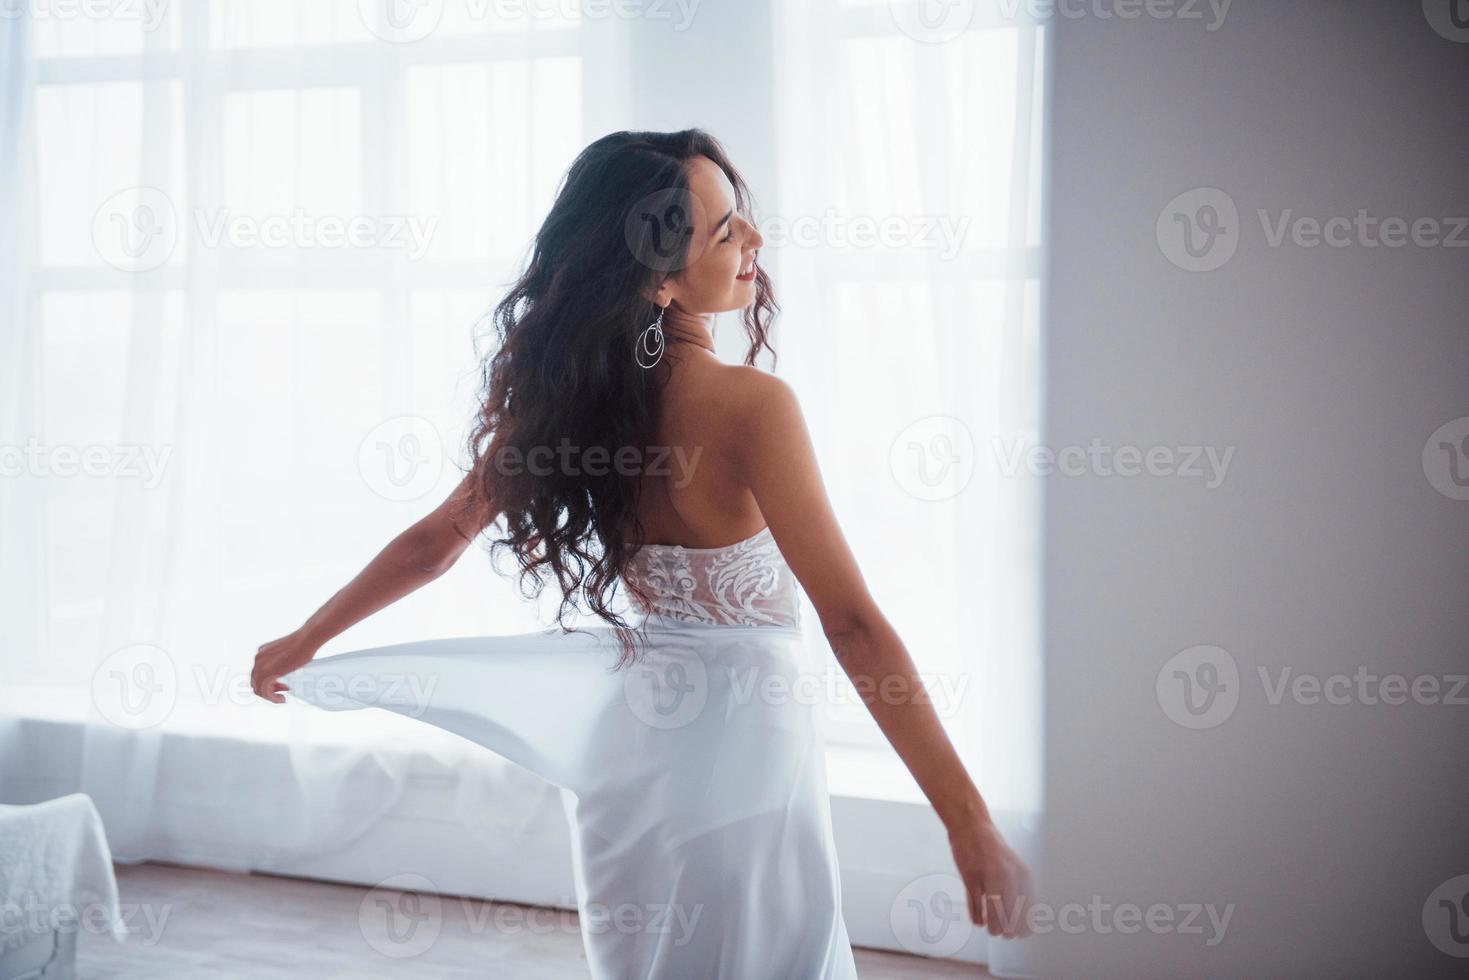 bakifrån. vacker kvinna i vit klänning står i vitt rum med dagsljus genom fönstren foto